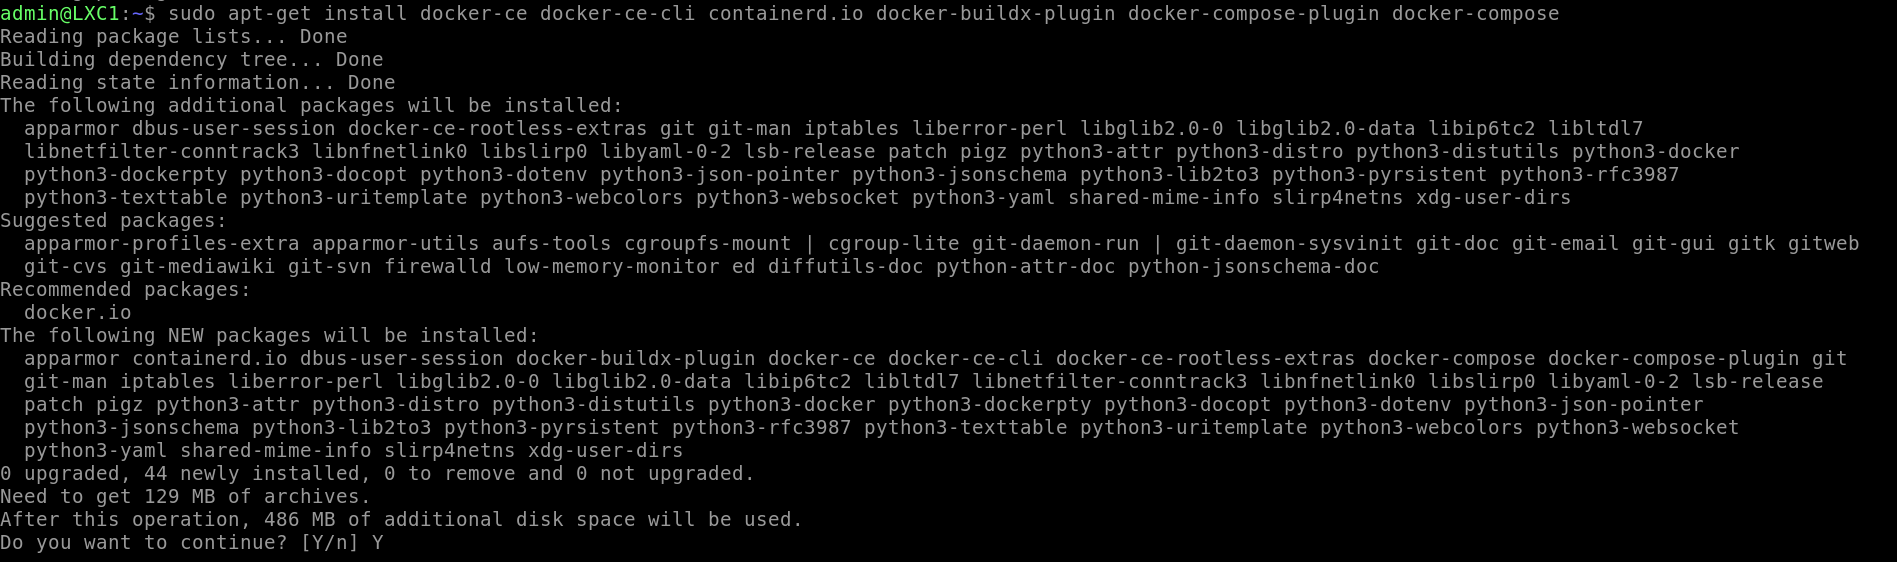 Installing Docker